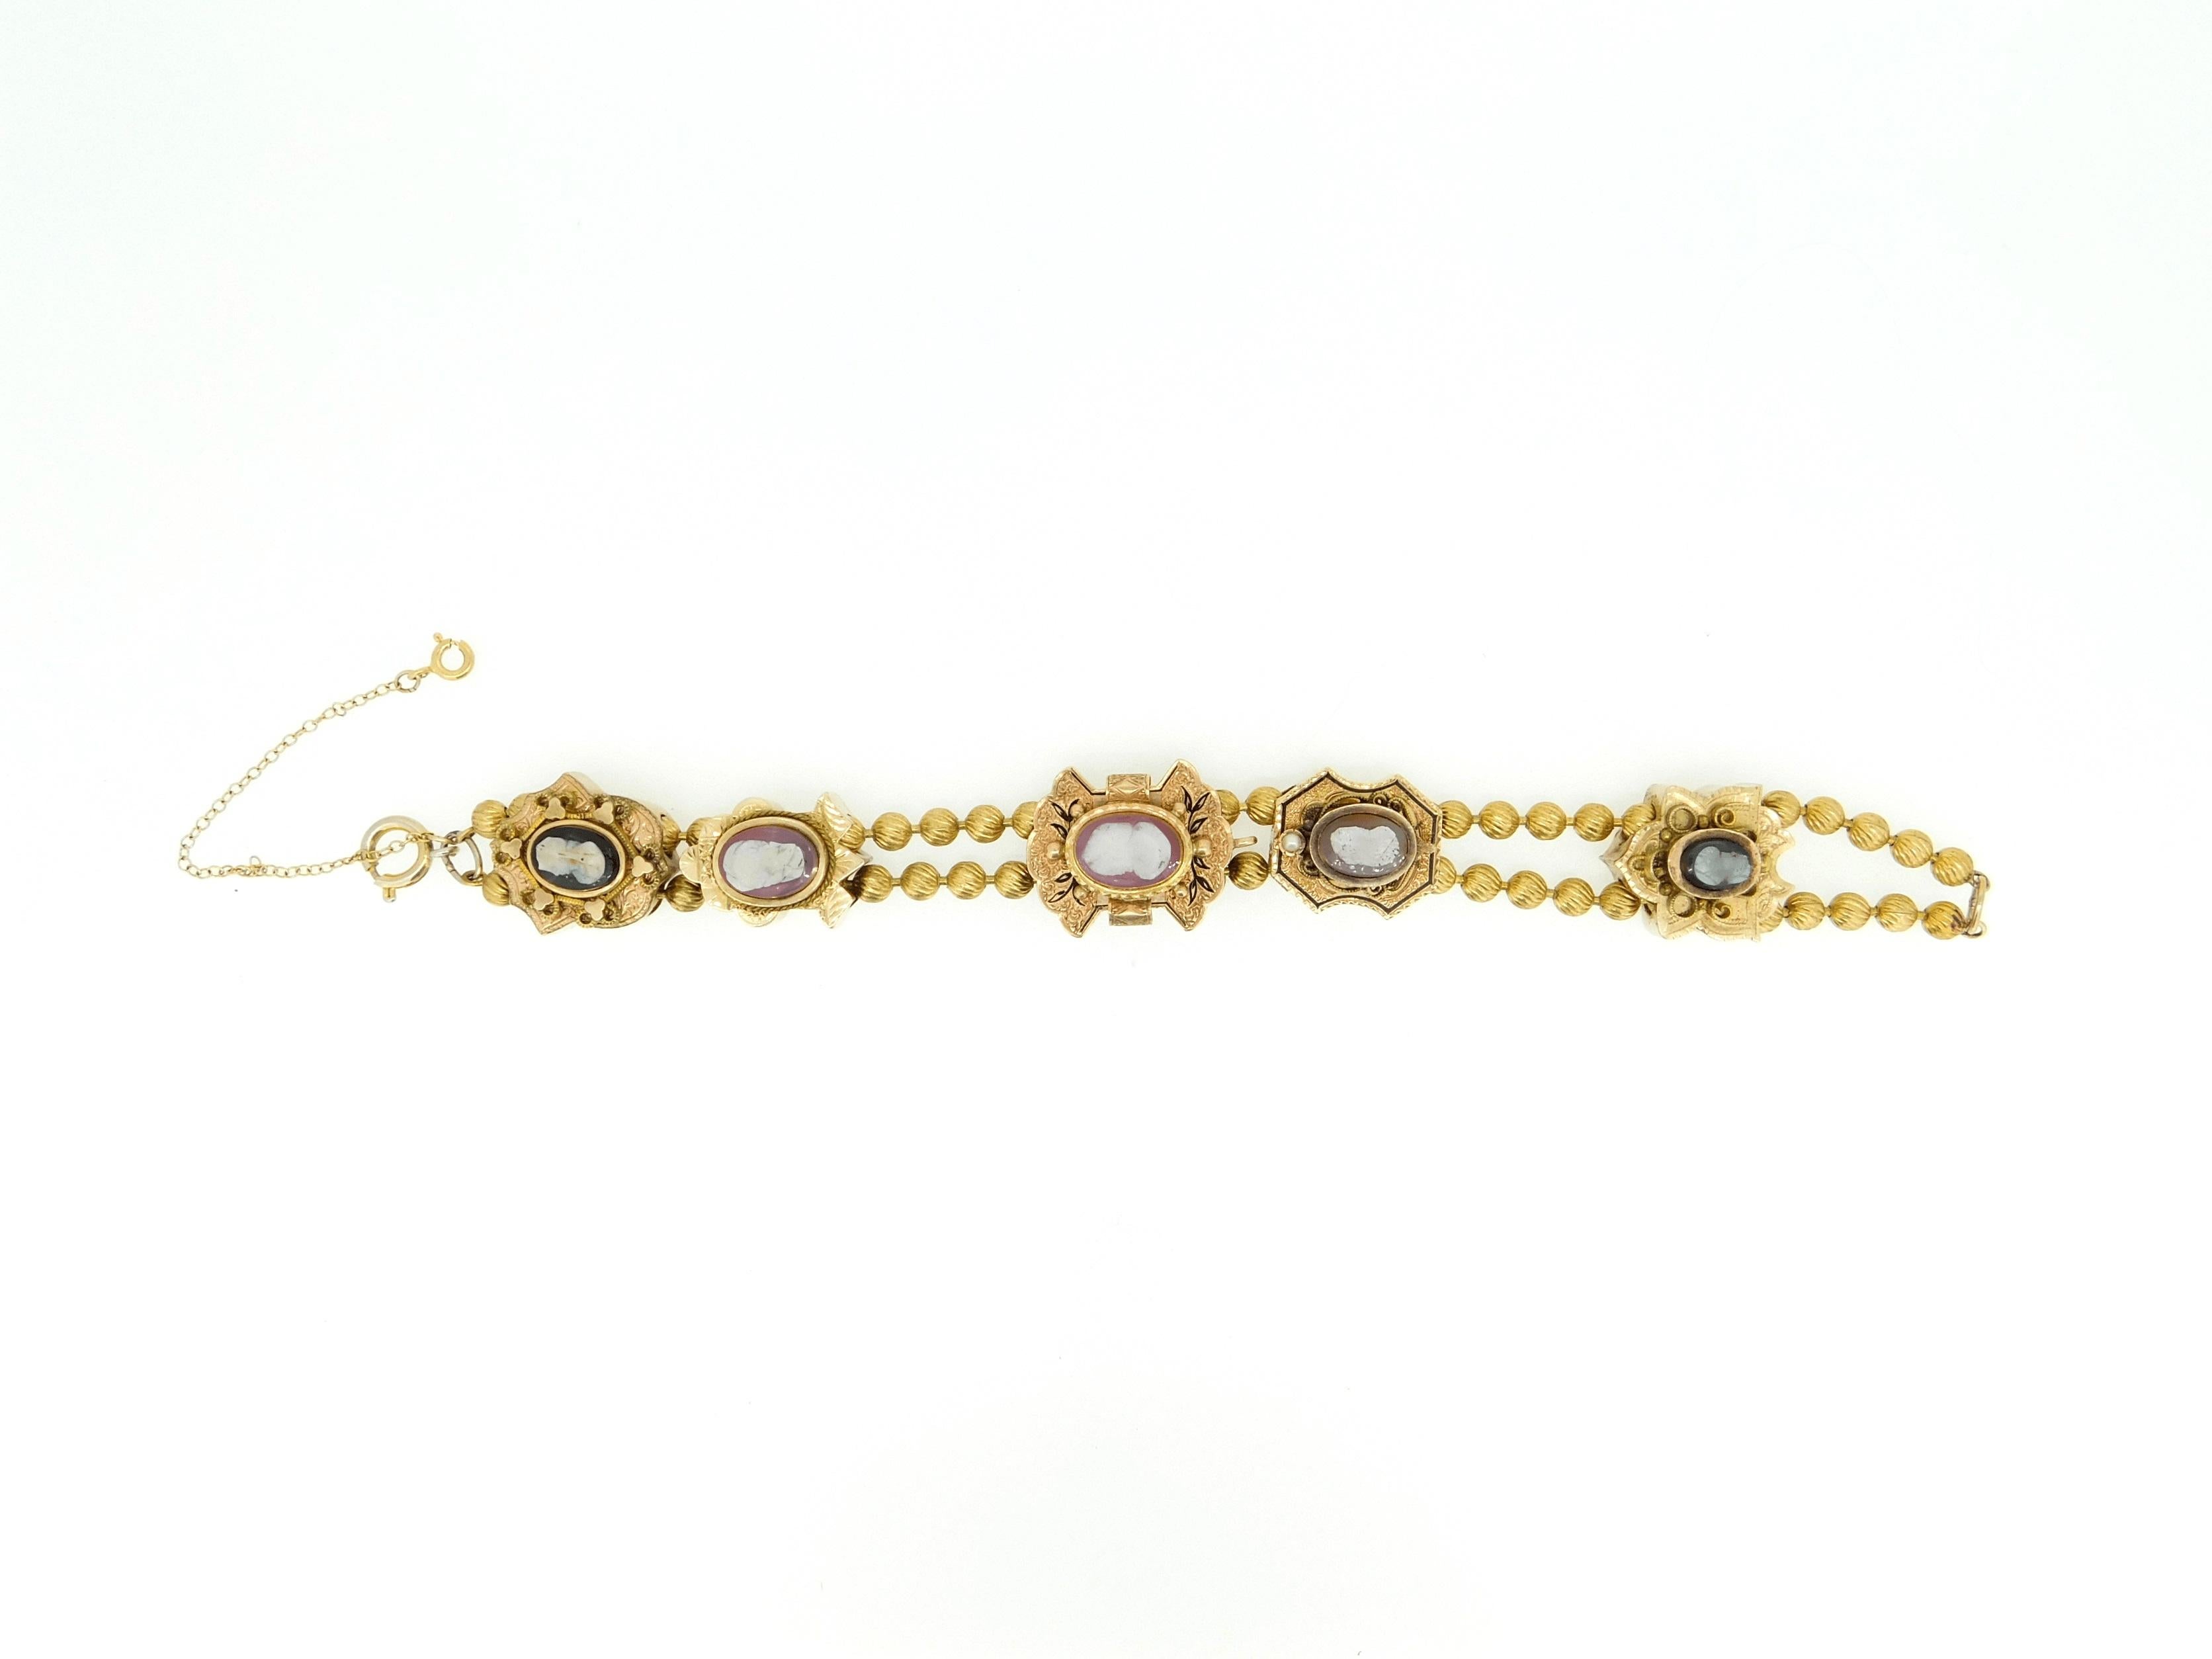 Echtes Naturstein-Kamee viktorianisches XL-Gold-Schiebe-Armband (#J4362)

Viktorianisches Kameenarmband mit extra großen Schiebern aus Gelb- und Roségold. Er verfügt über drei 14-karätige Goldschieber mit braunen und weißen Steinen und zwei